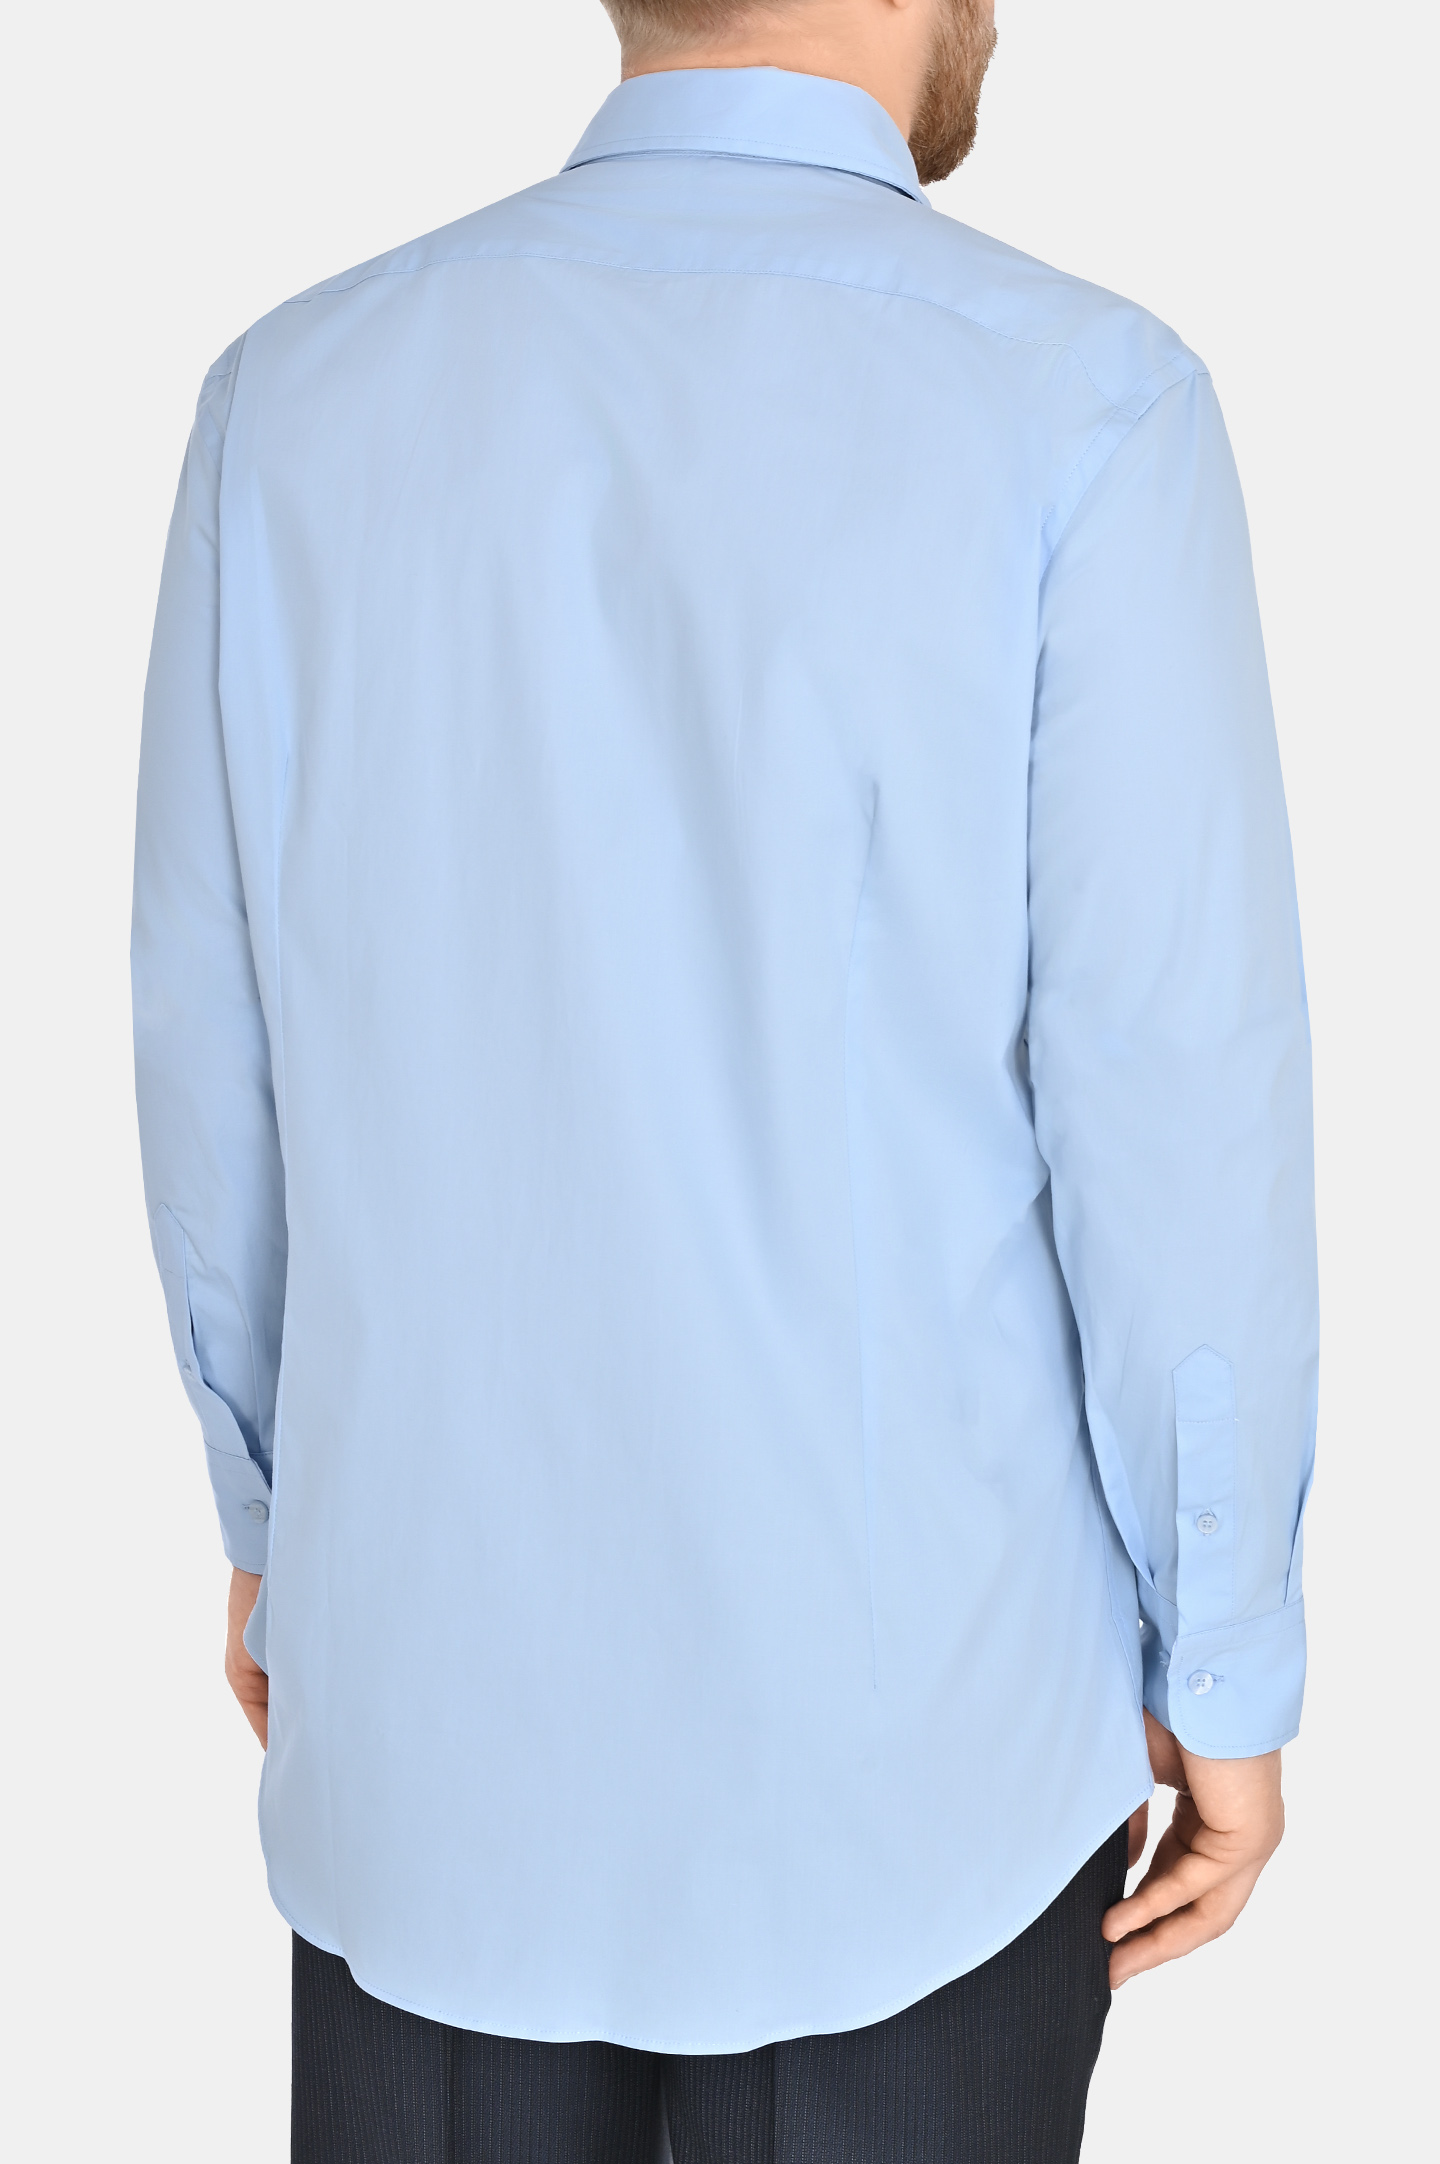 Рубашка из хлопка и эластана ETRO MRIB0001 AV202, цвет: Голубой, Мужской